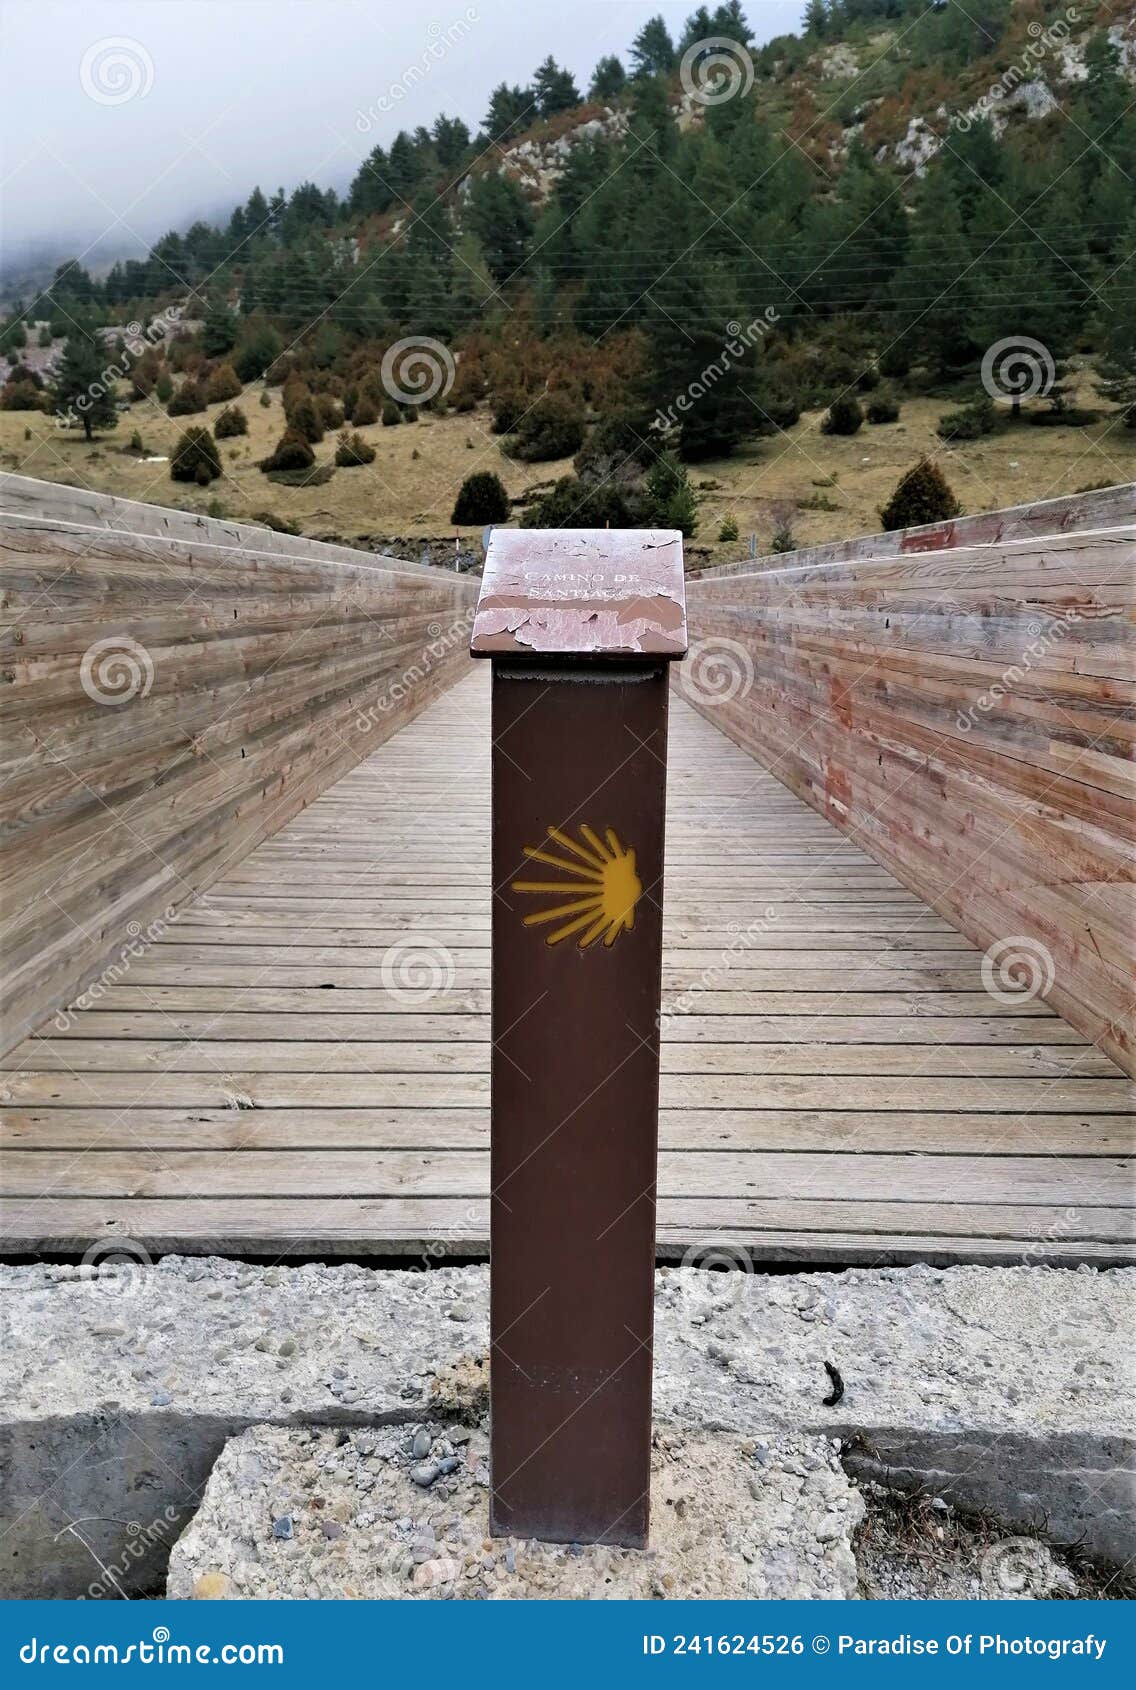 camino de santiago mark before crossing a wooden bridge